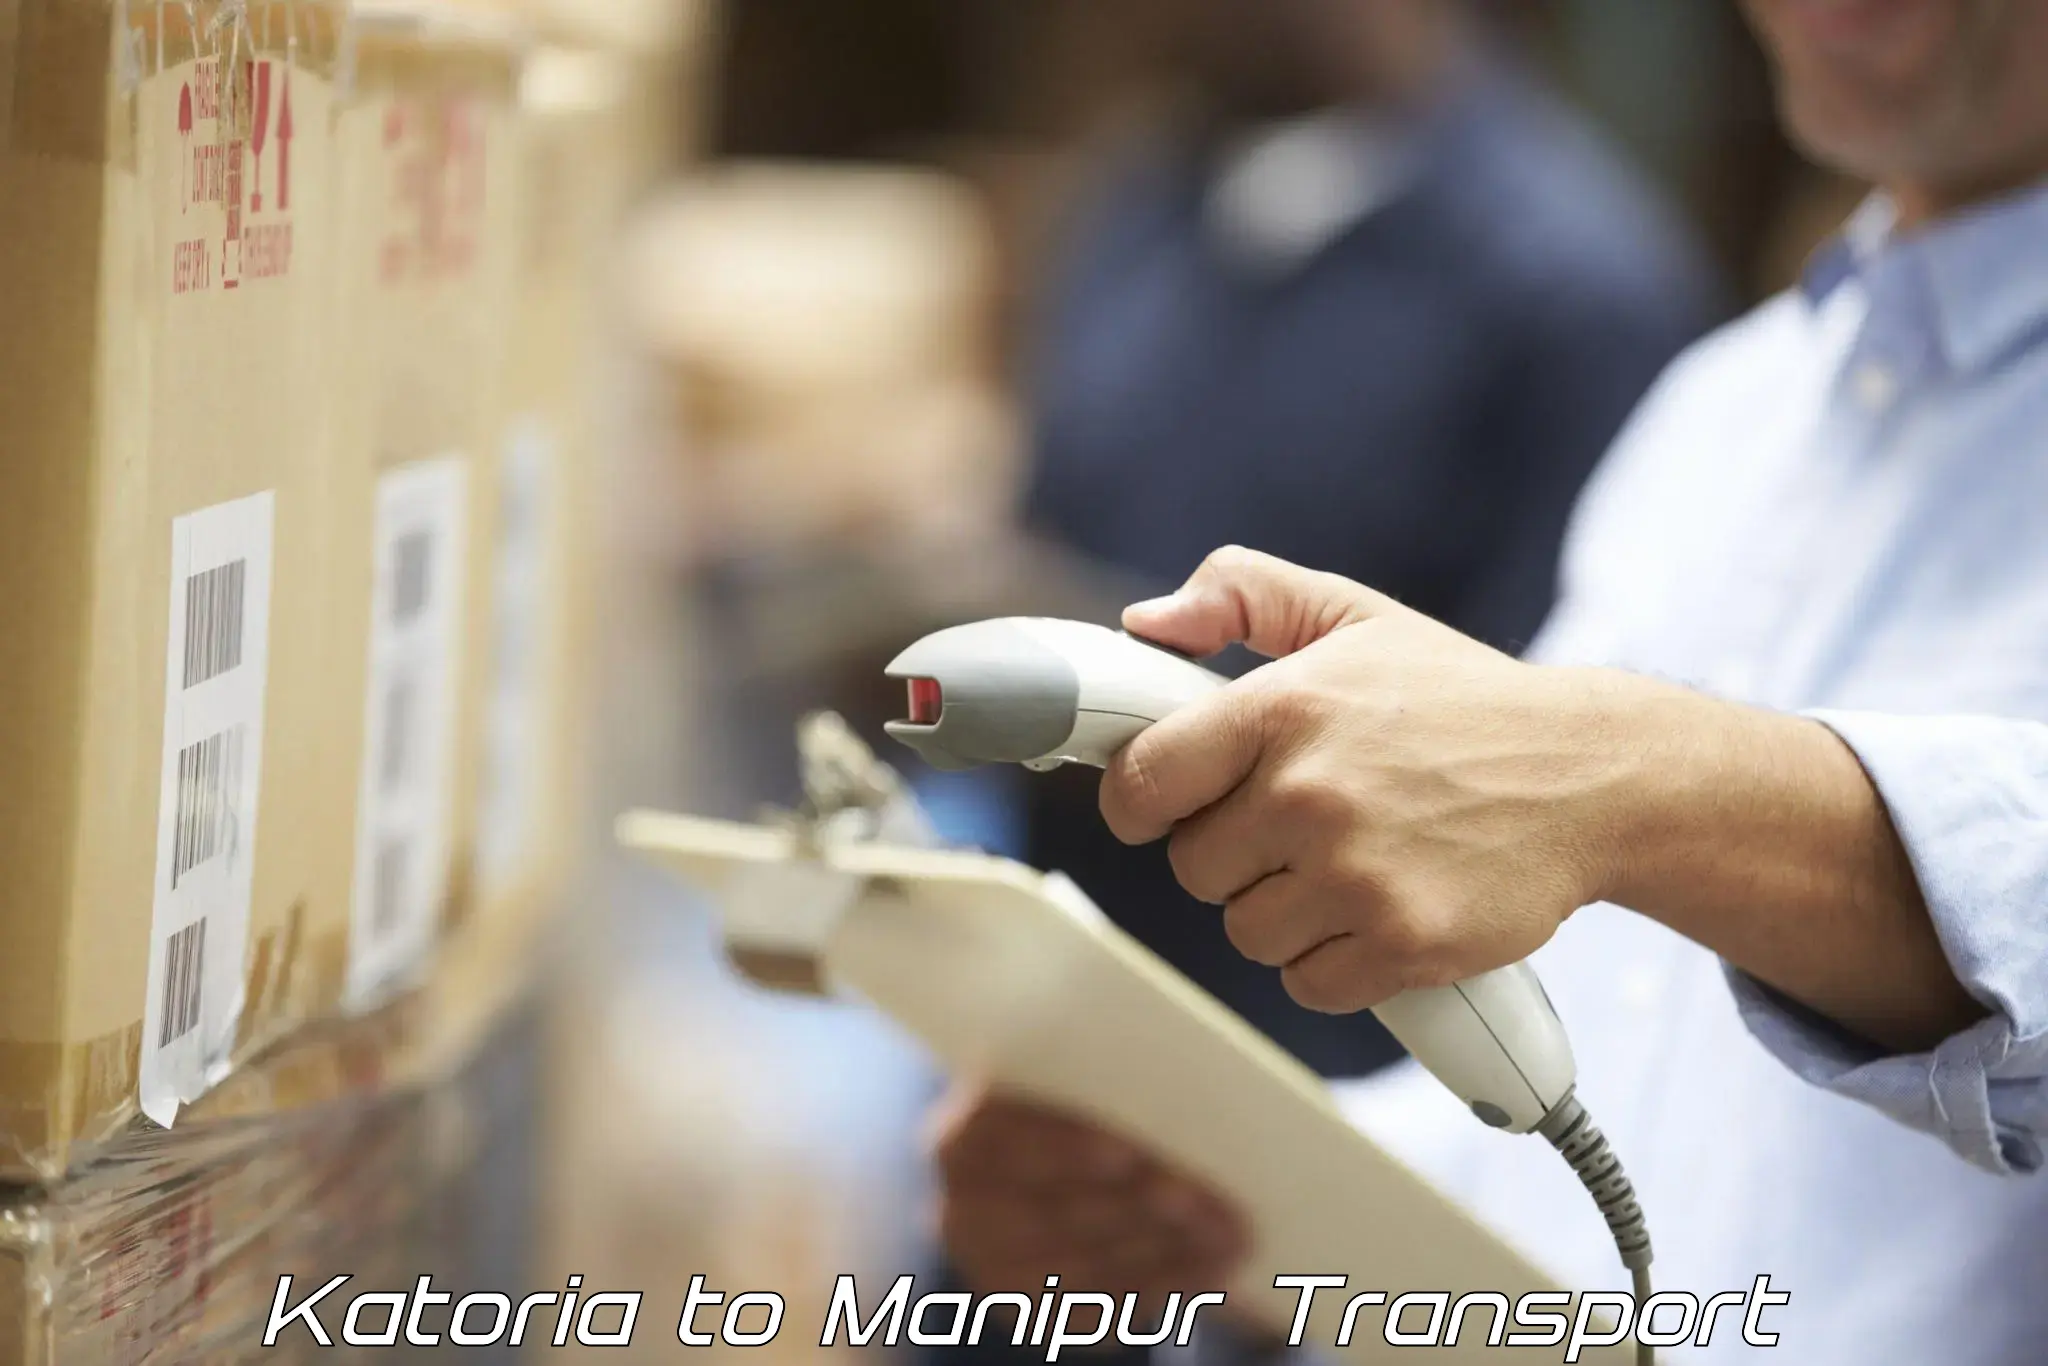 Transport in sharing Katoria to Manipur